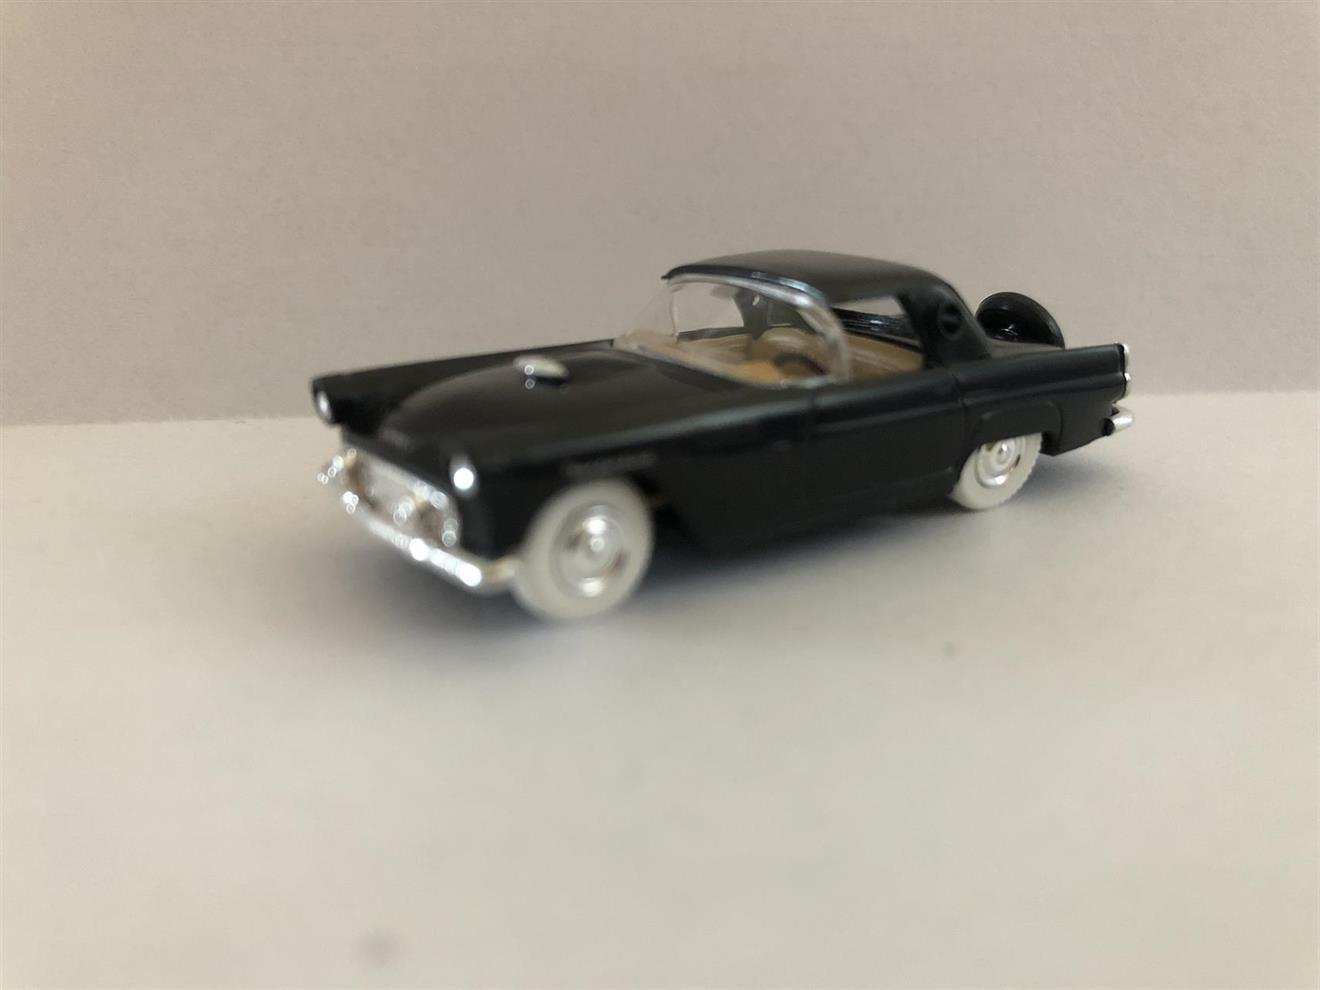 Ford Thunderbird '56  Hardtop - sort (hvite dekk)